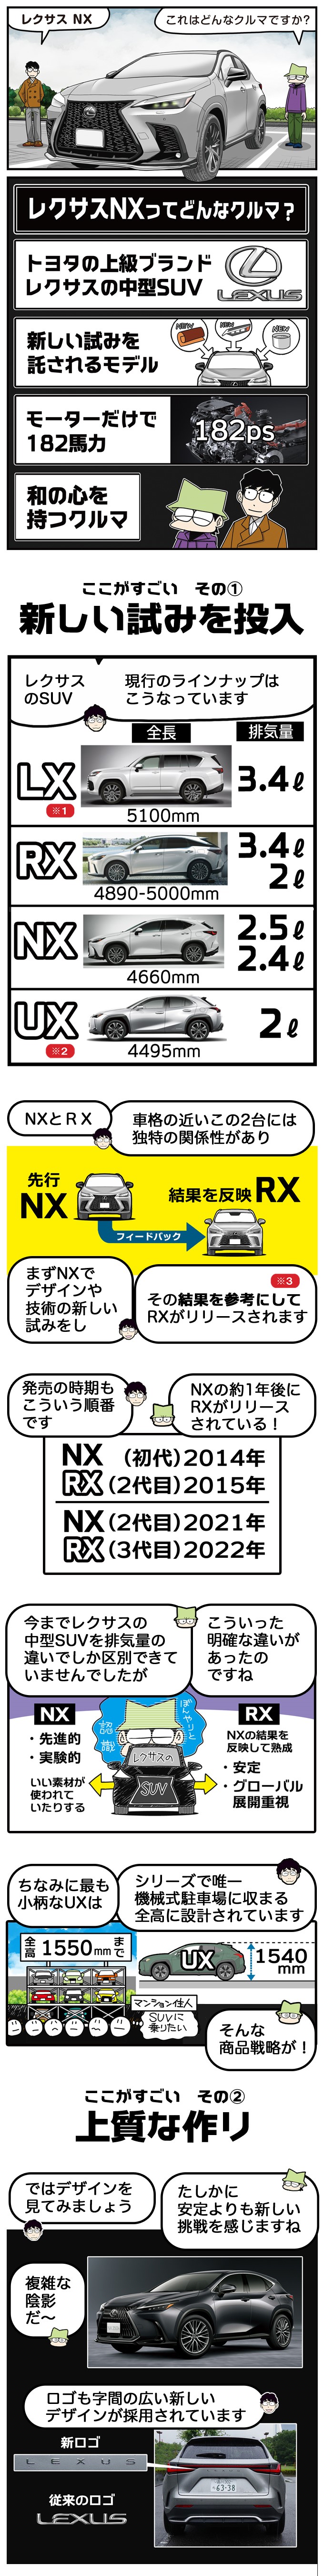 NX（田代哲也）